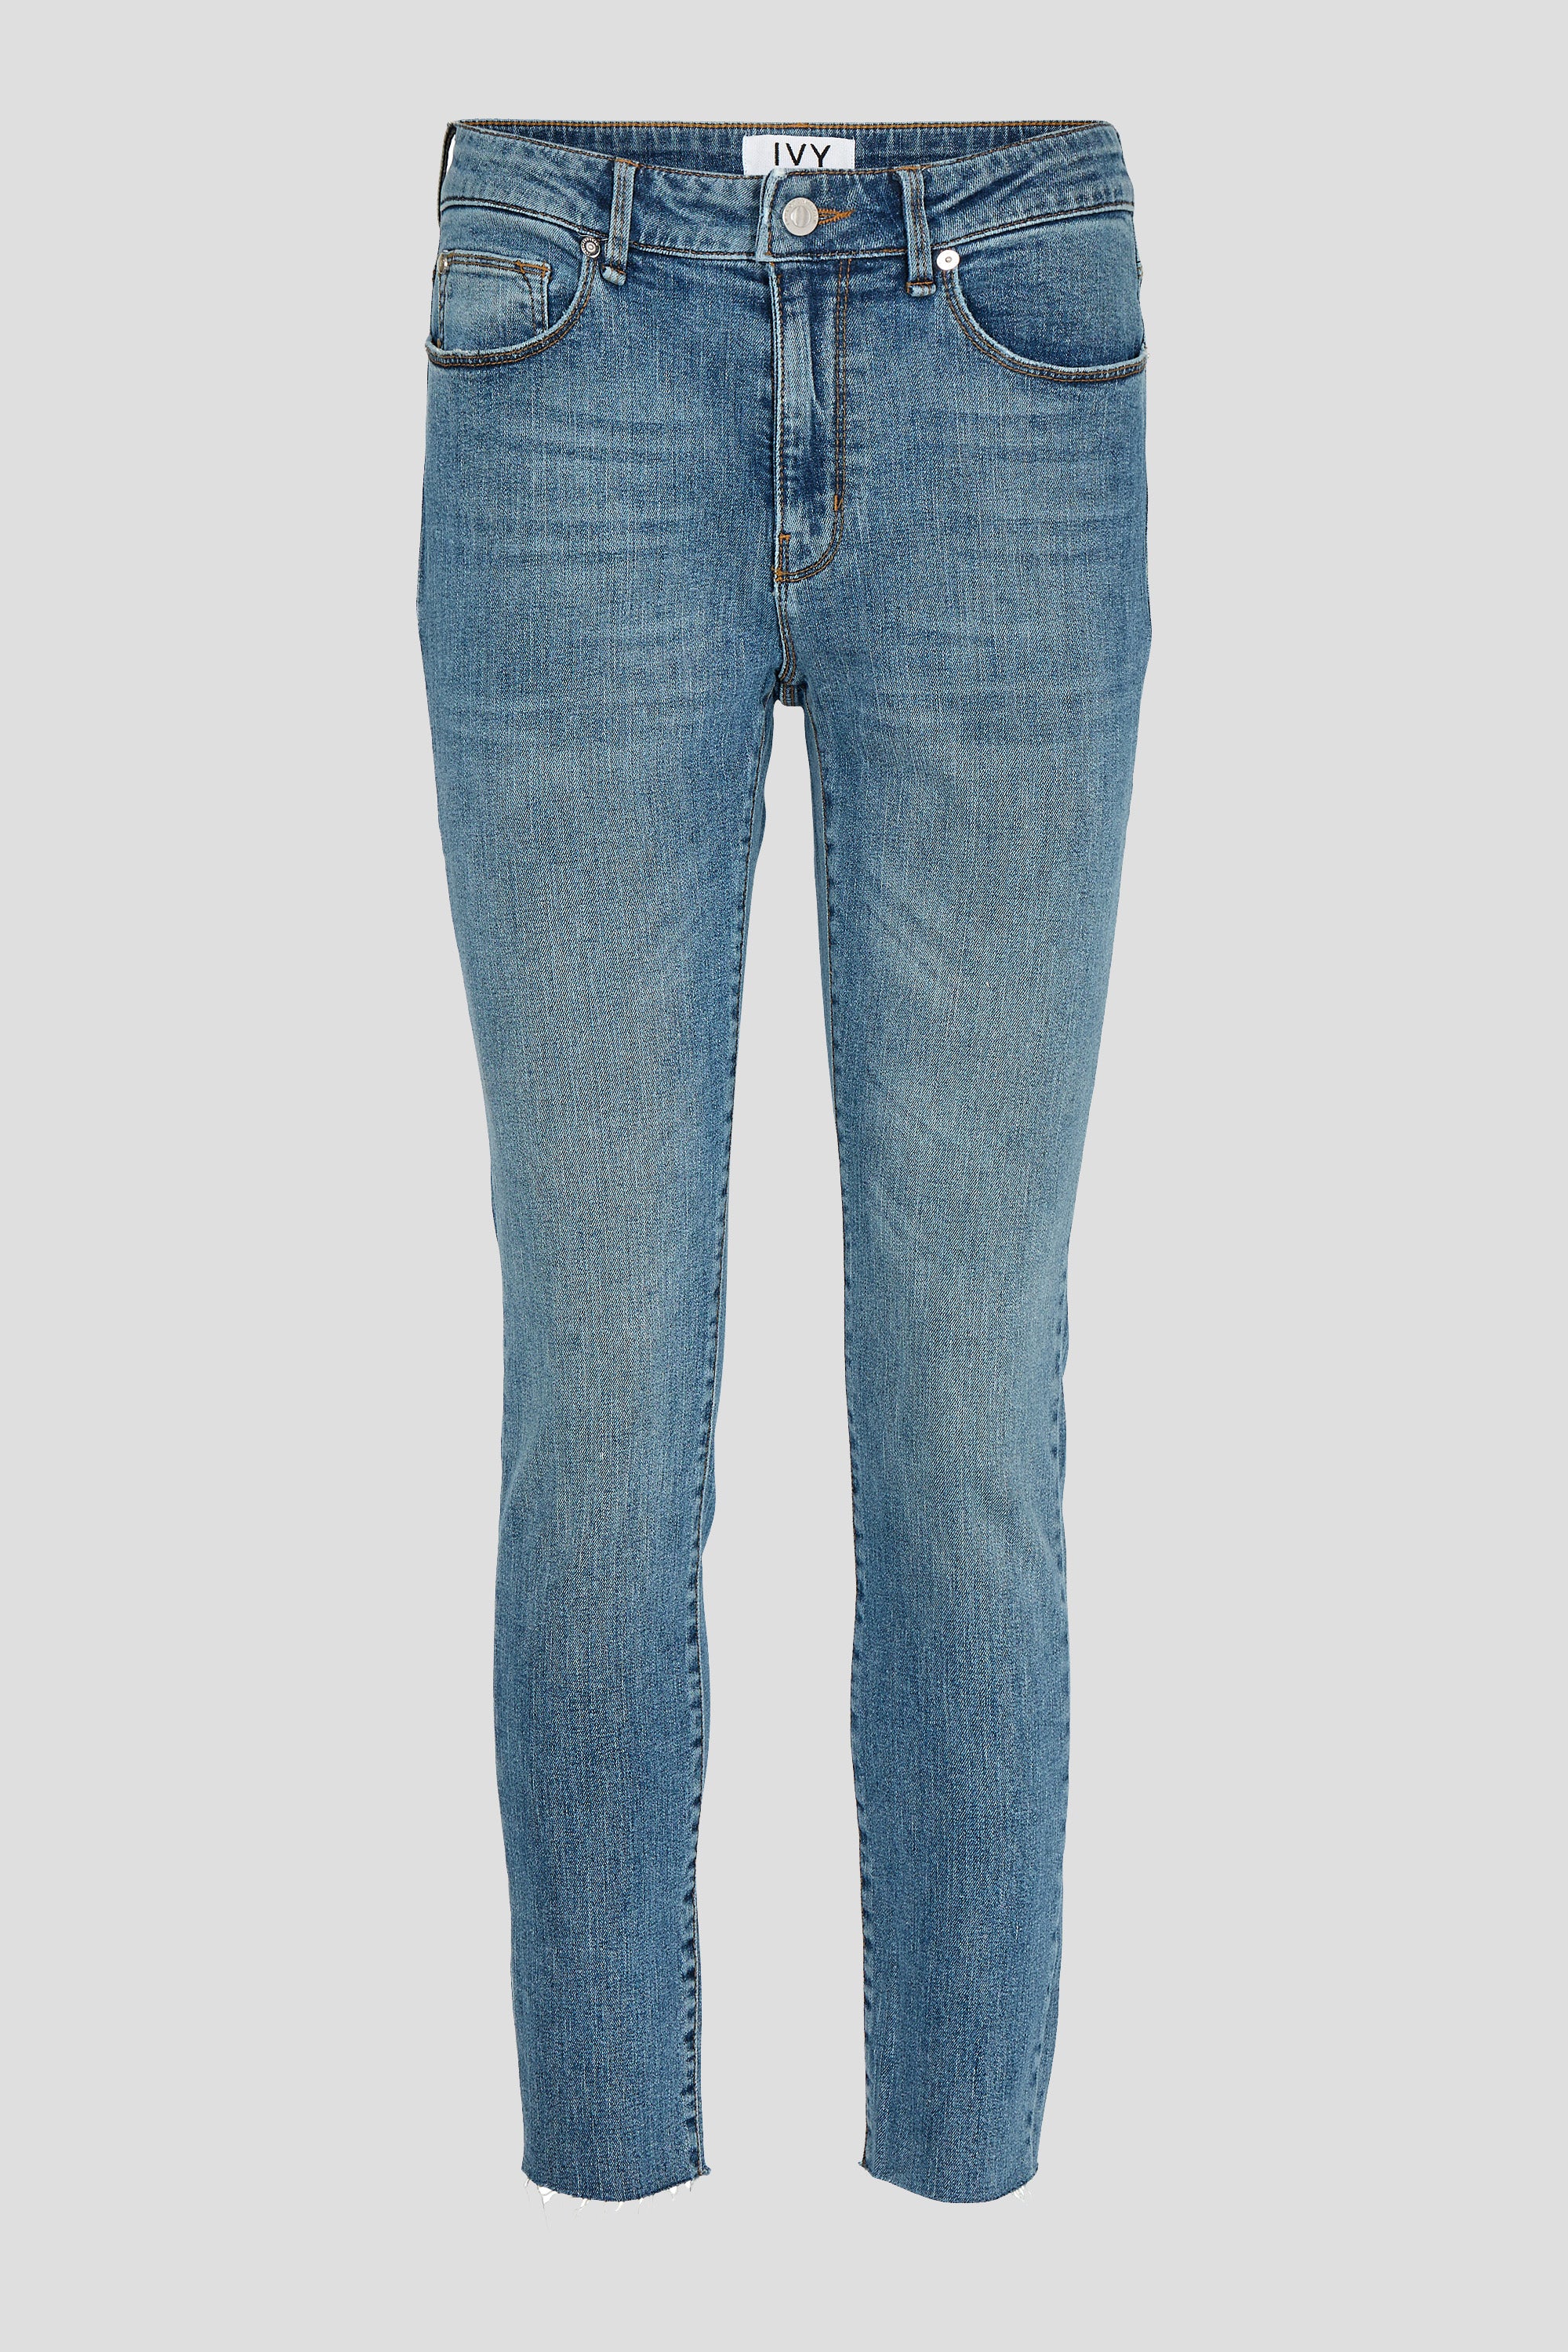 IVY Copenhagen IVY-Alexa Jeans wash Port Louis Jeans & Pants 51 Denim Blue